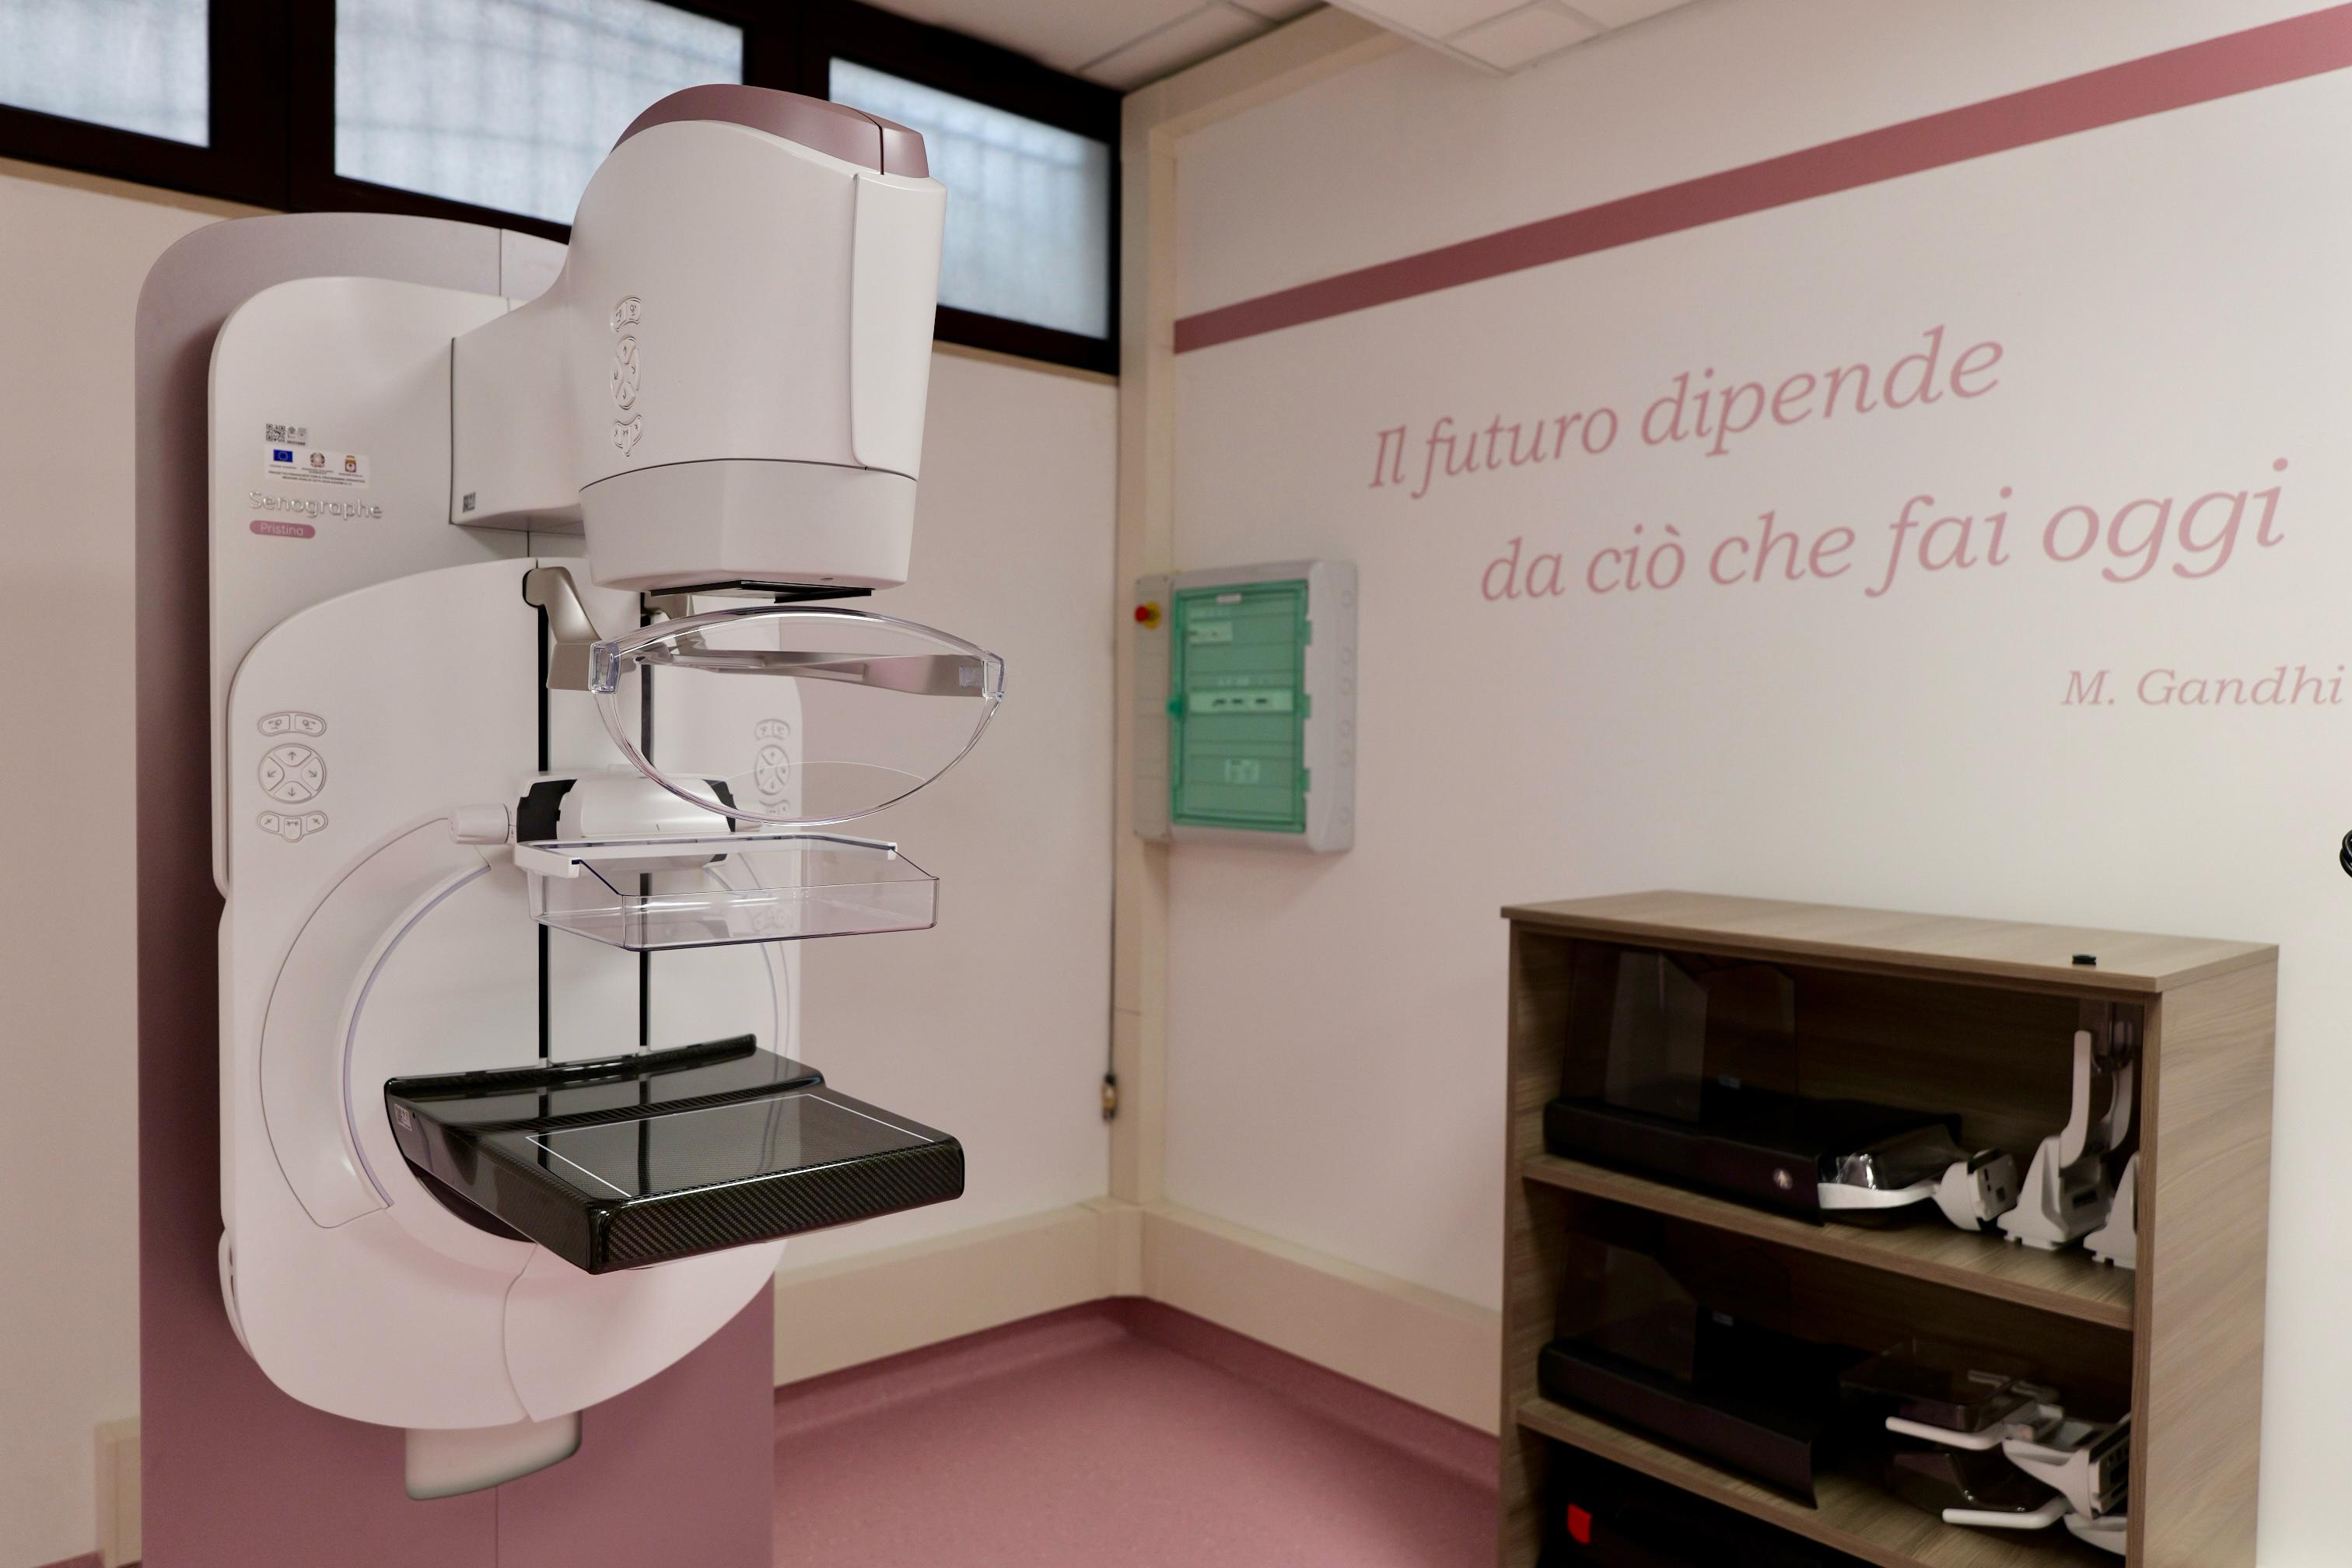 Galleria Un nuovo centro Screening con mammografo digitale 3D nel cuore di Bari: sarà a disposizione di 10mila donne residenti nei quartieri Madonnella, Libertà, Bari Murat e Città vecchia - Diapositiva 8 di 10